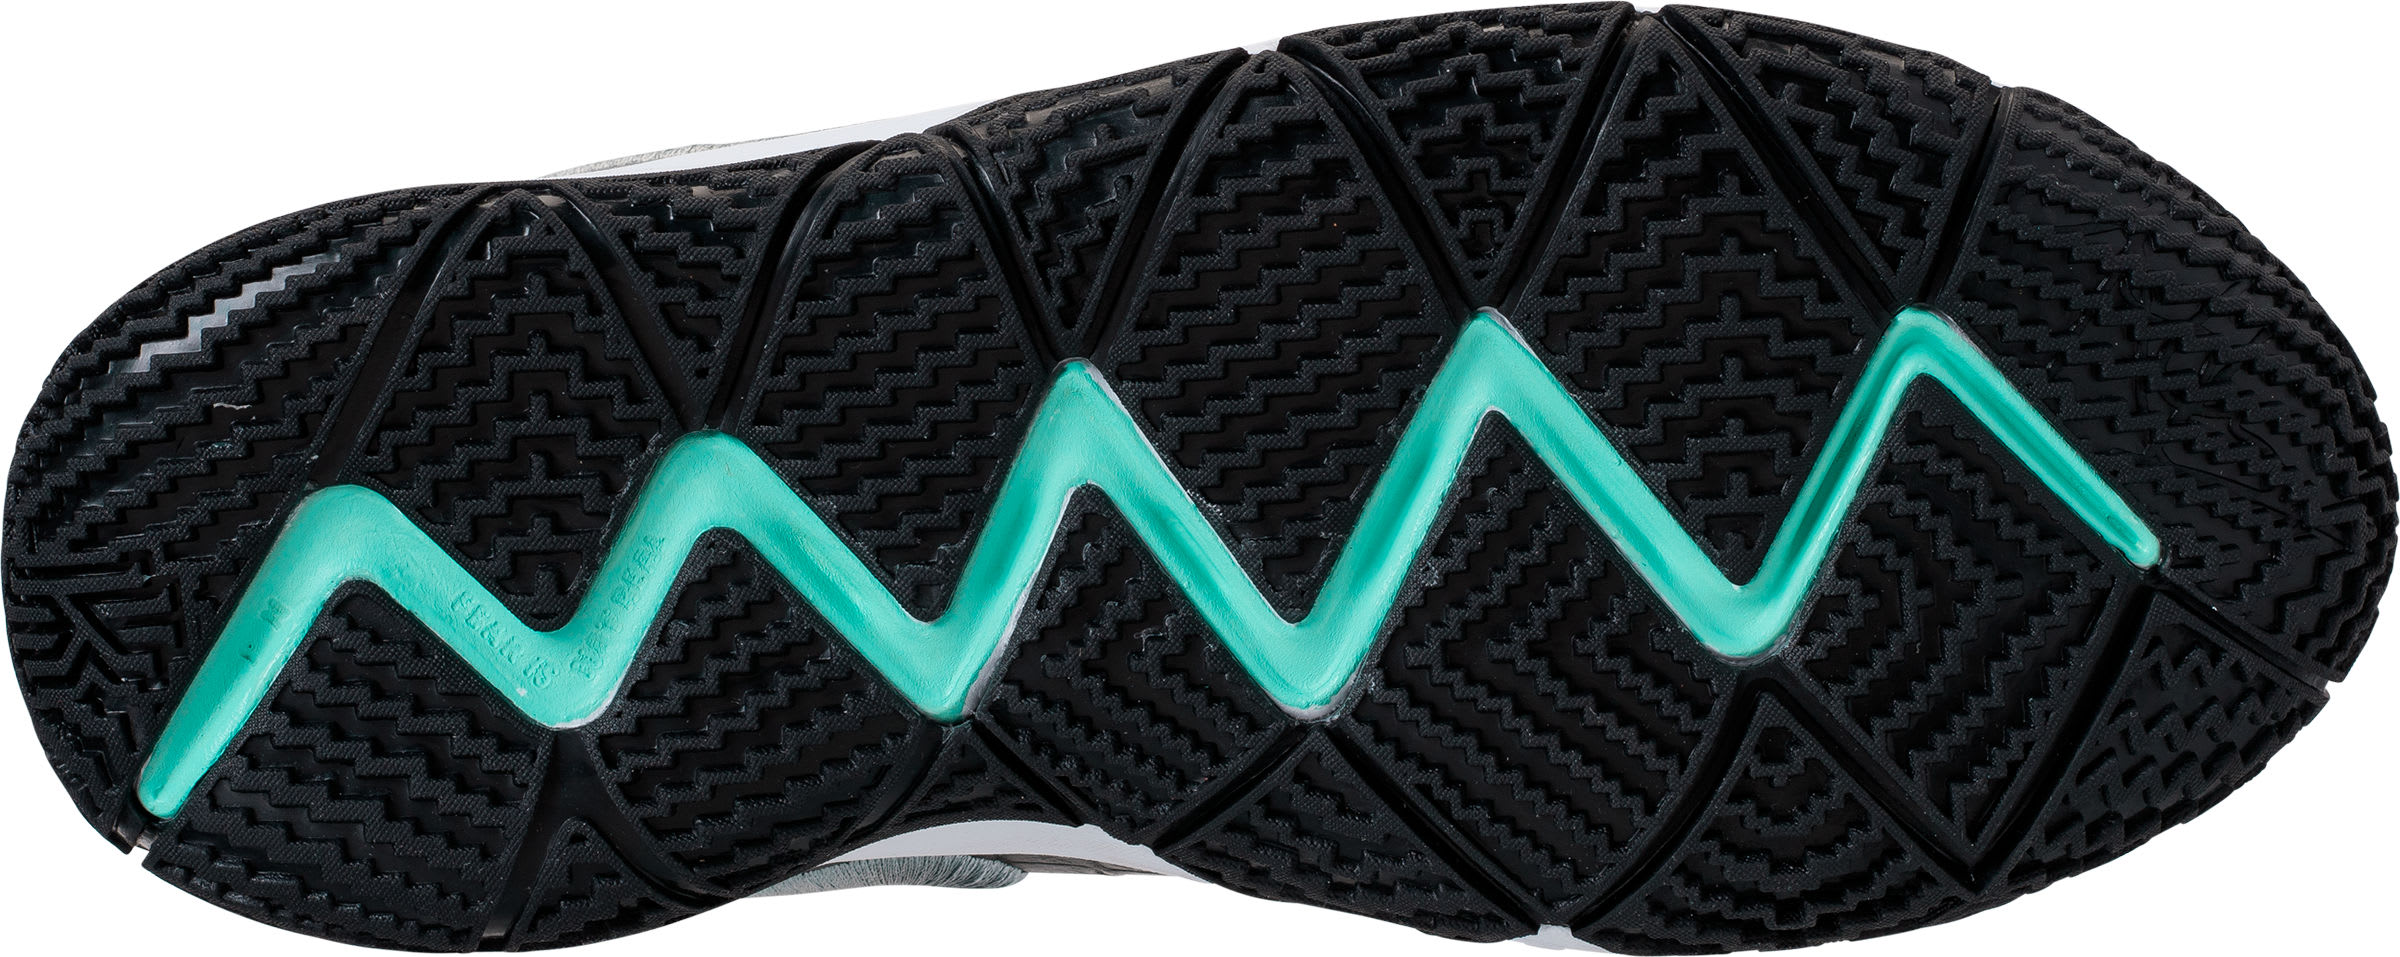 Nike Kyrie 4 GS Tiffany Tropical Twist Release Date AA2897-390 Sole